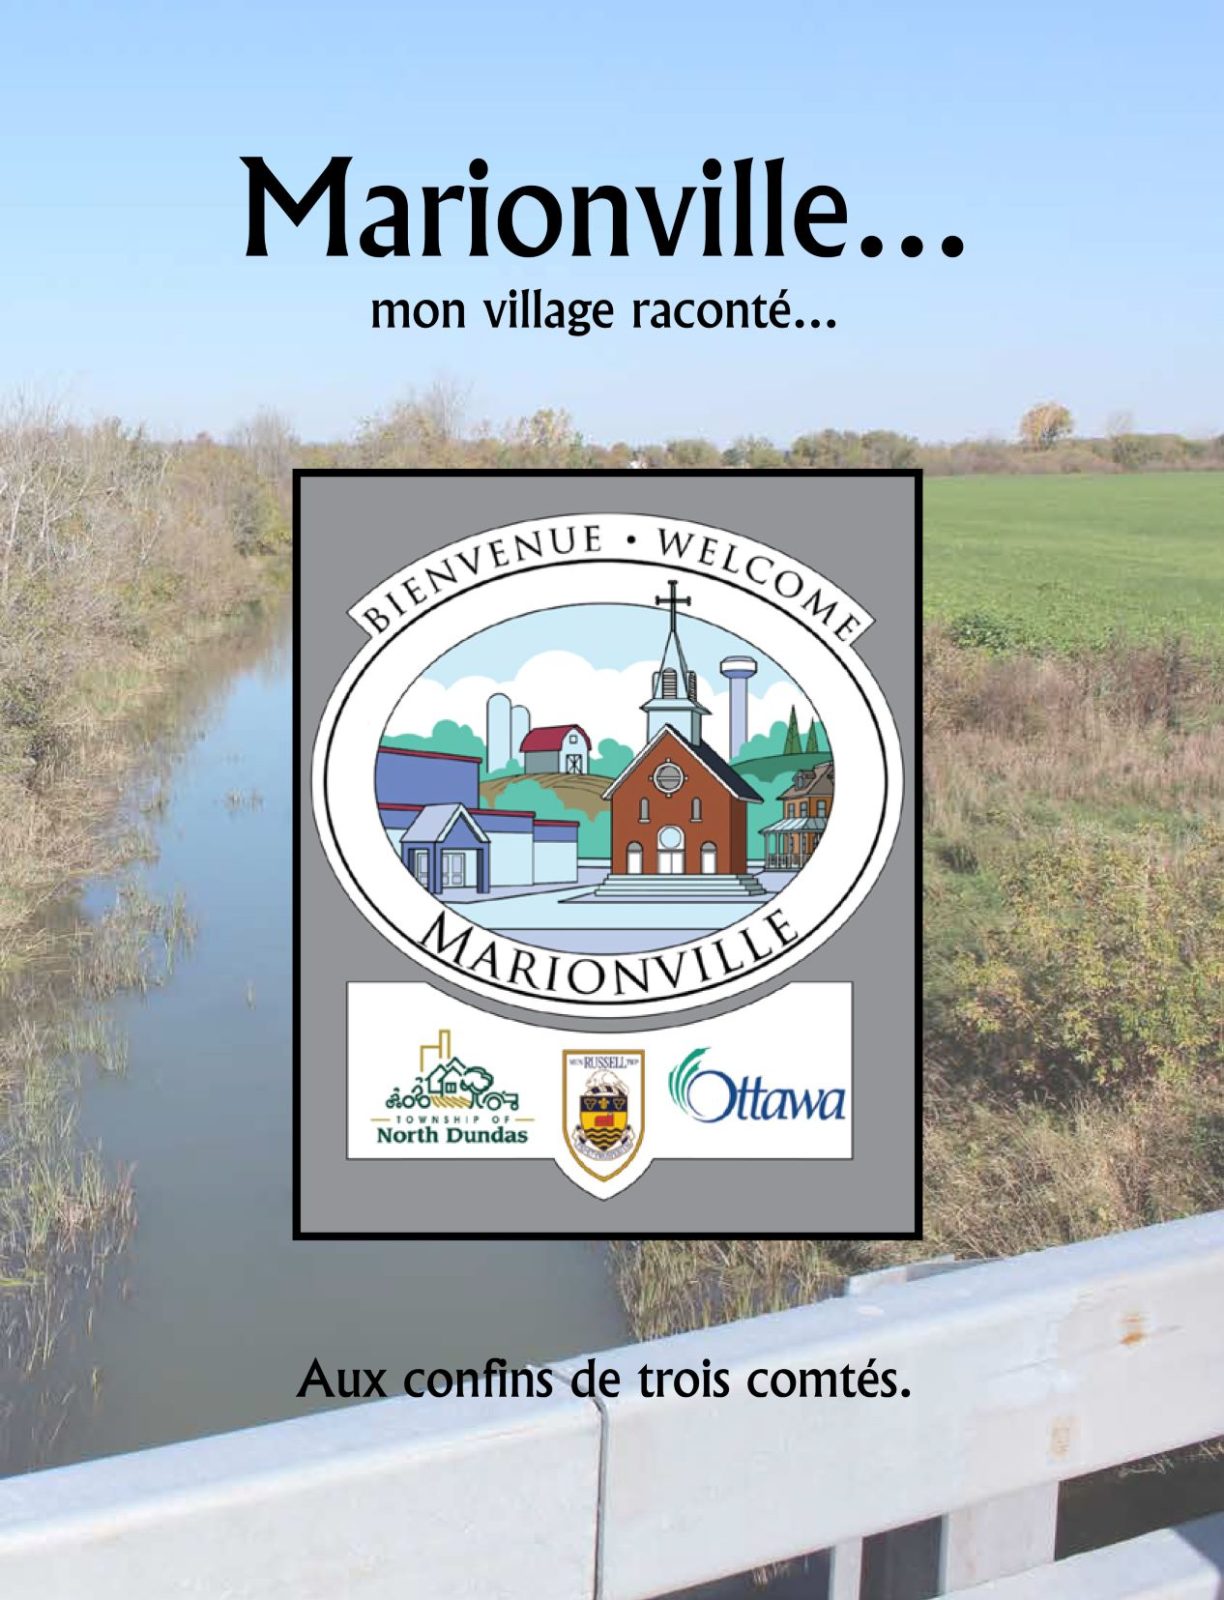 Un auteur local publie l’histoire de Marionville